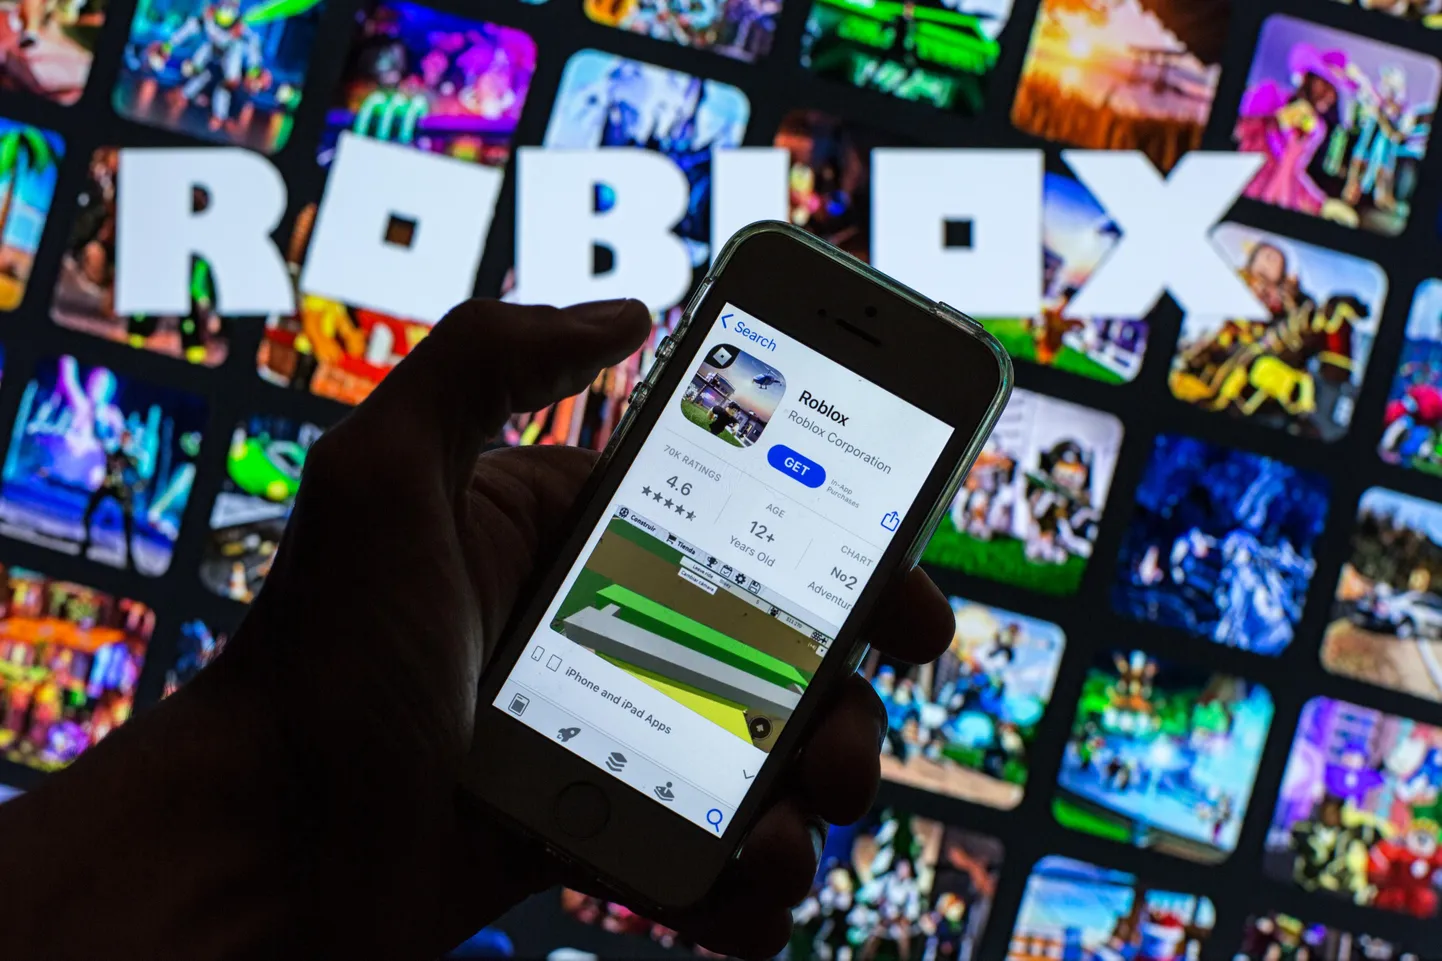 Roblox on veebipõhine videomäng, millel on üle 65 miljonit aktiivse kasutaja ja kolm miljonit arendajat. Miks üks arendajatest konverentsile raskelt relvastatuna sõitis, seda uurib nüüd politsei. Konverentsi auhinnatseremoonia jäeti intsidendi pärast ära.